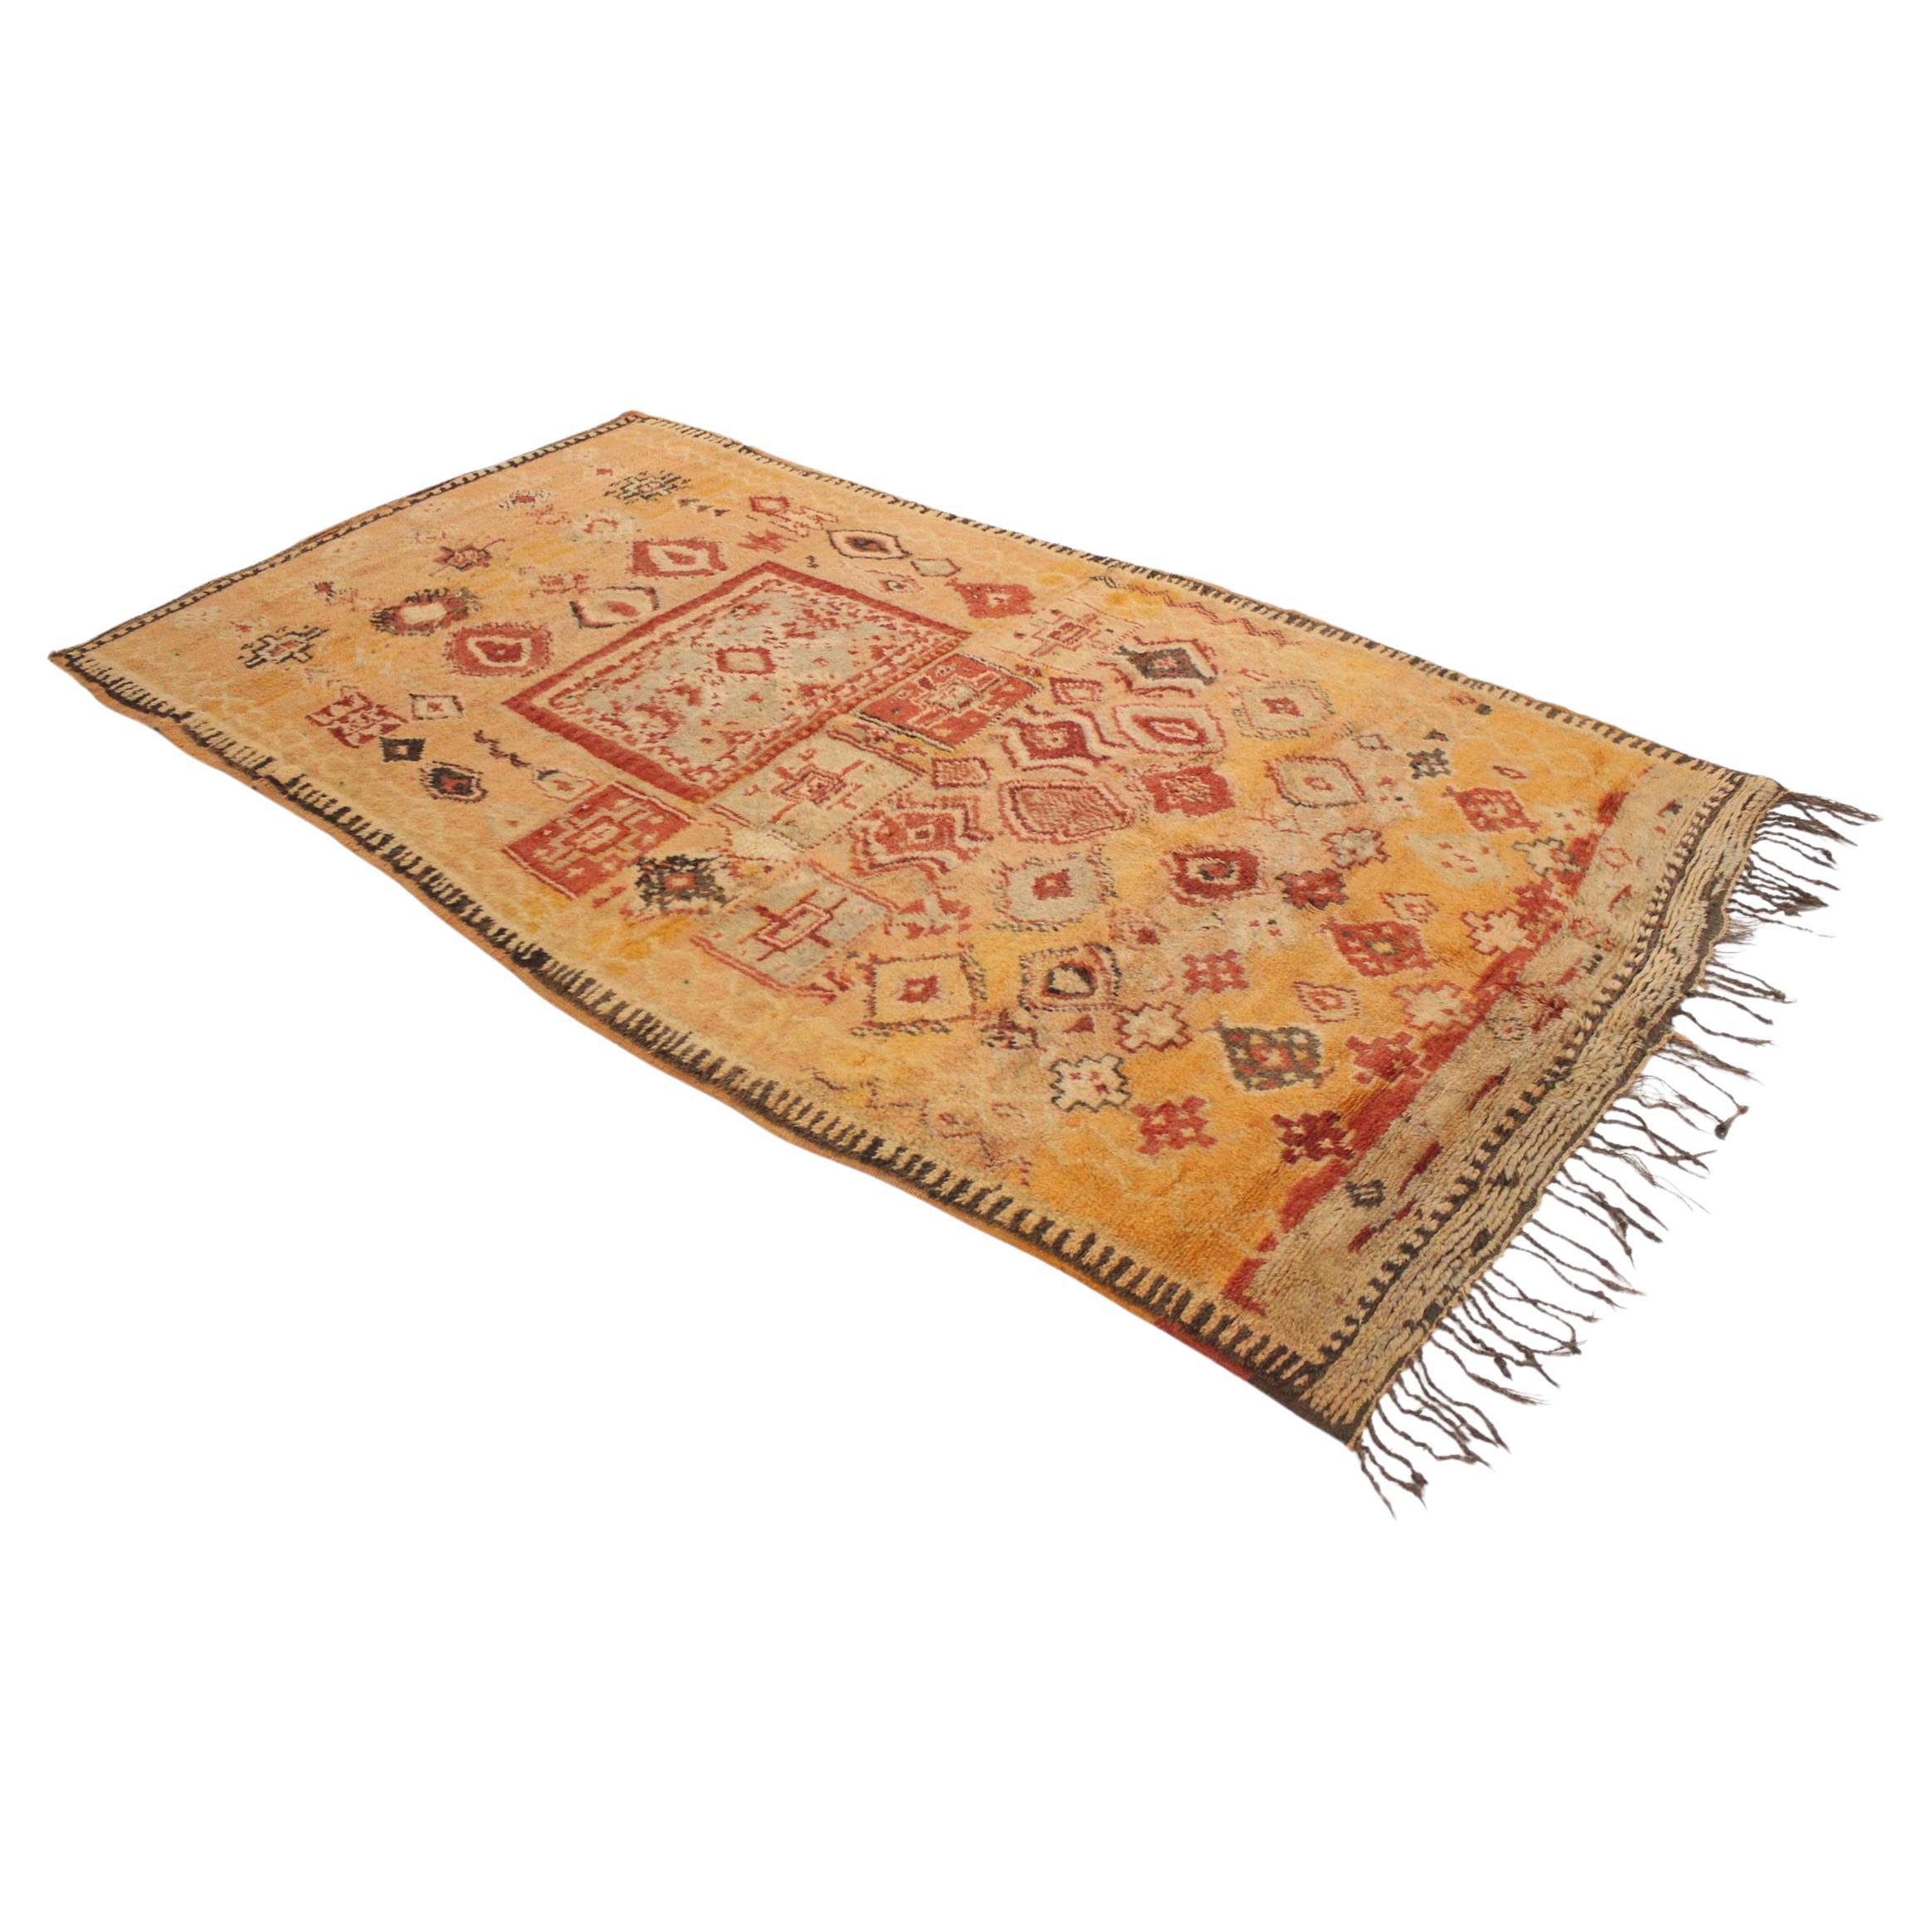 Vintage Moroccan Taznakht rug - Orange/red - 5.2x9.5feet / 161x292cm For Sale